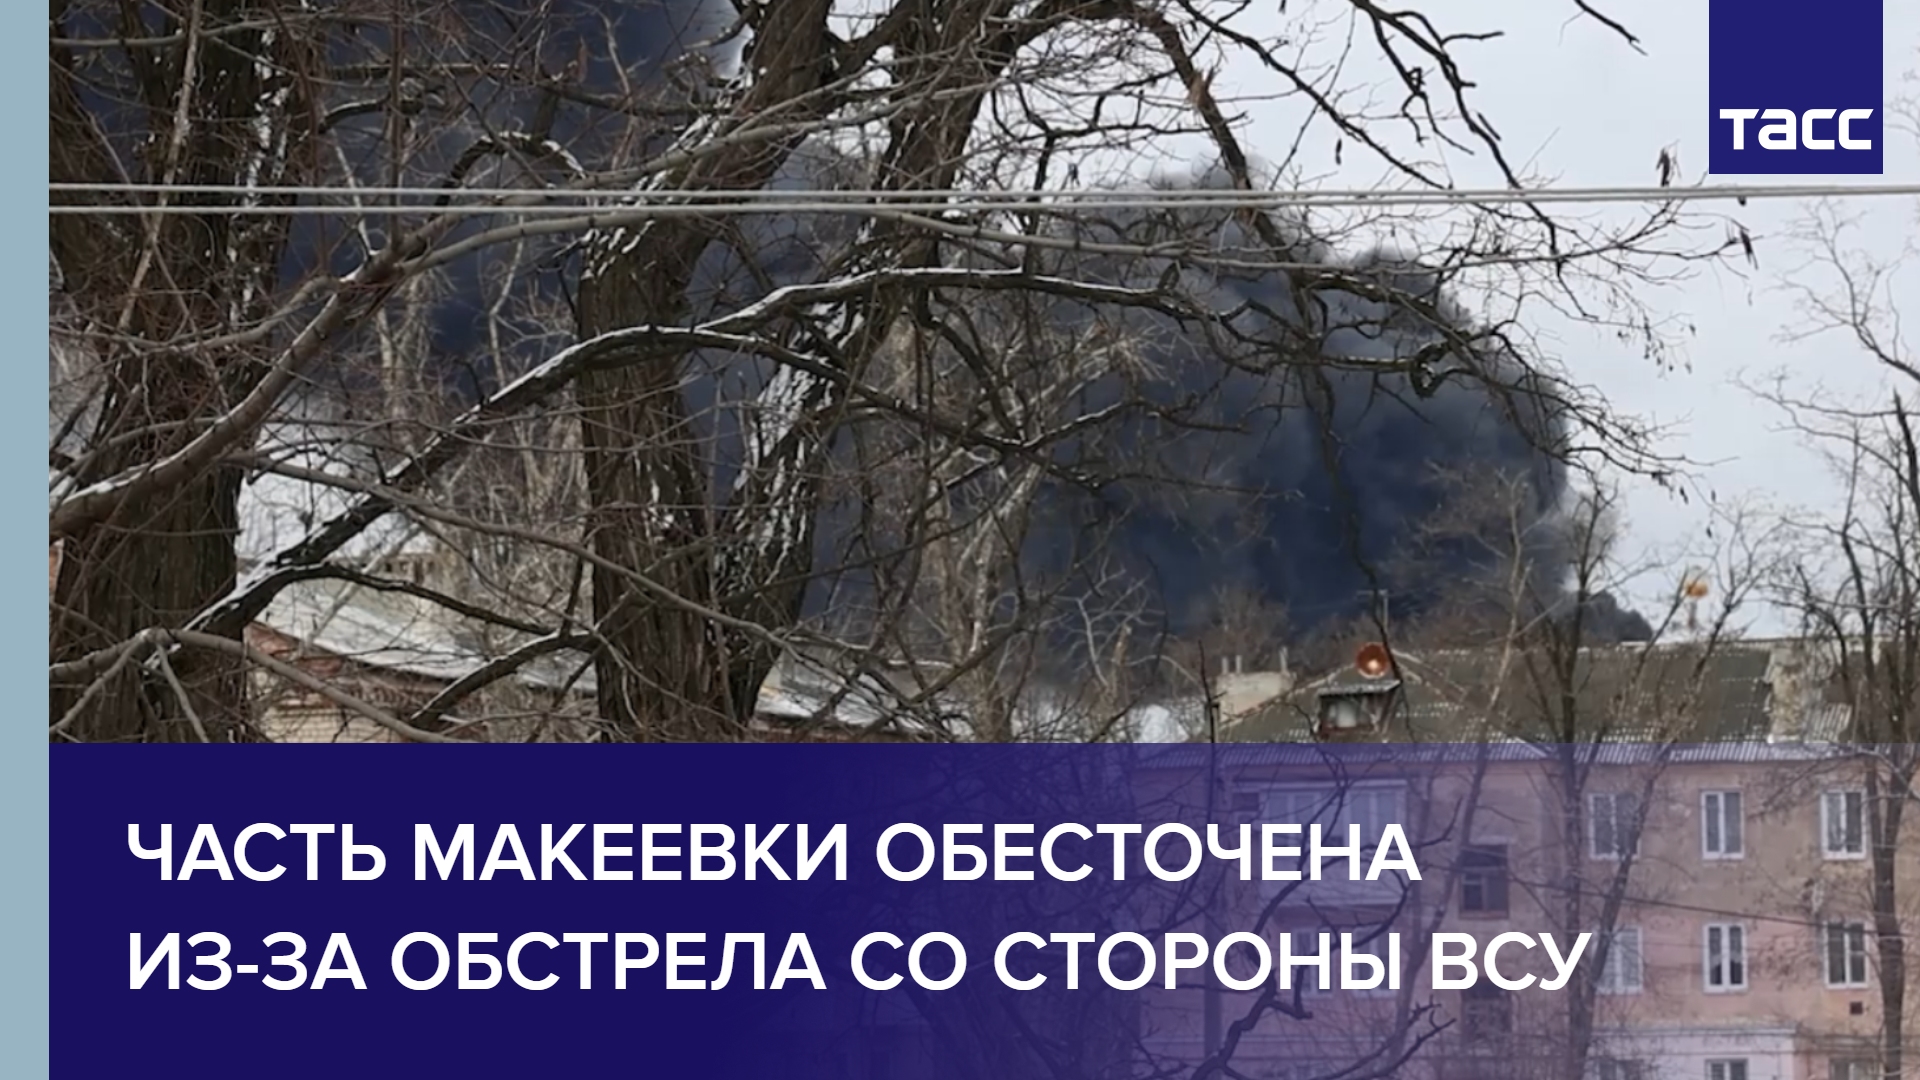 Часть Макеевки обесточена из-за обстрела со стороны ВСУ #shorts